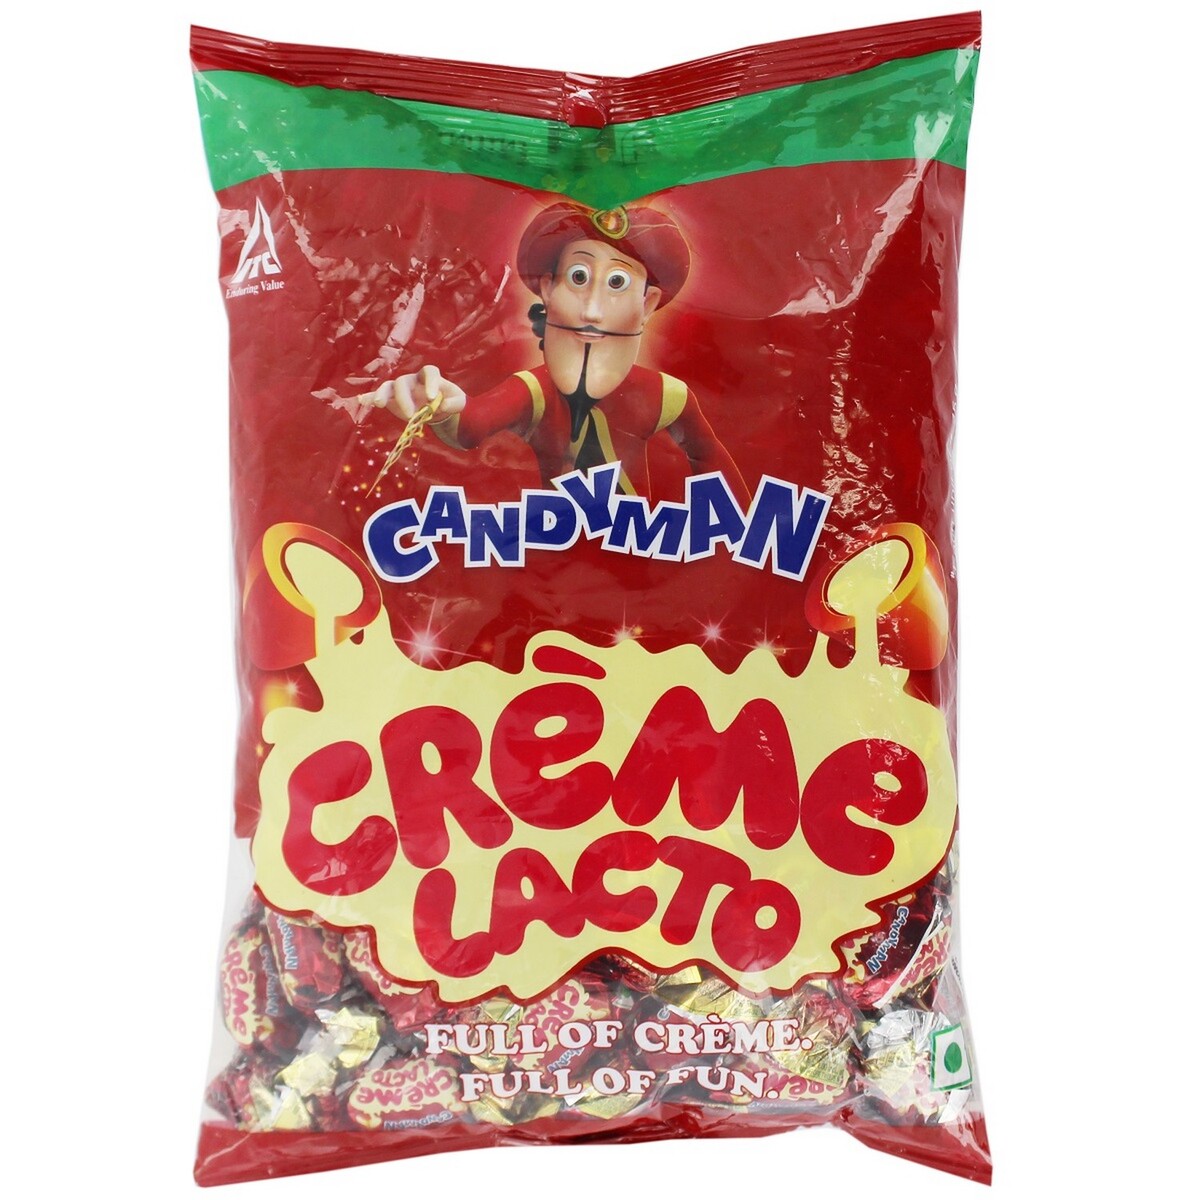 Candyman Creme Lacto 418gm